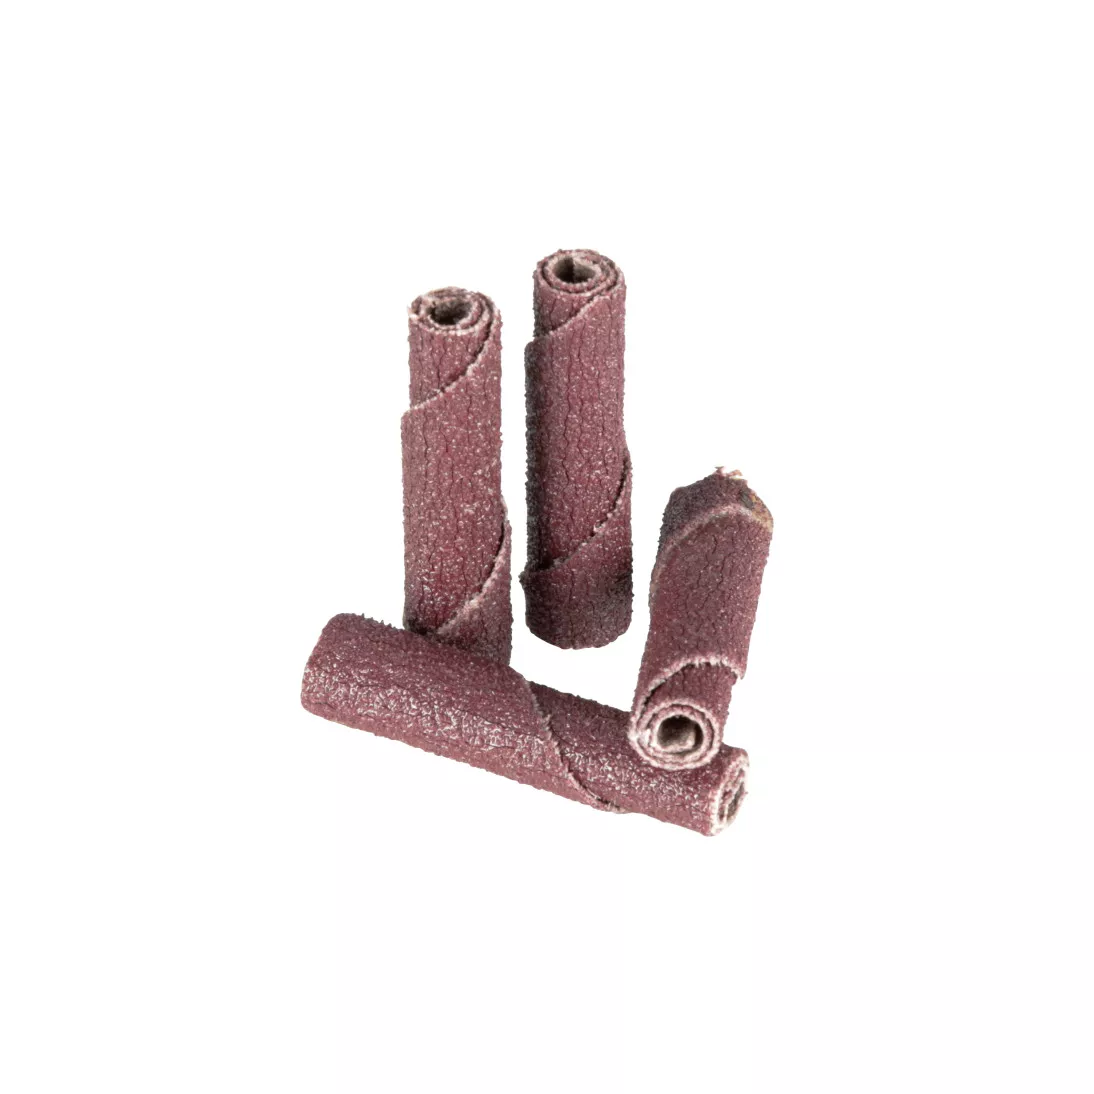 Standard Abrasives™ A/O Half Taper Cartridge Roll 701320, 3/8 in x 1-1/2
in x 1/8 in 80, 100 ea/Case